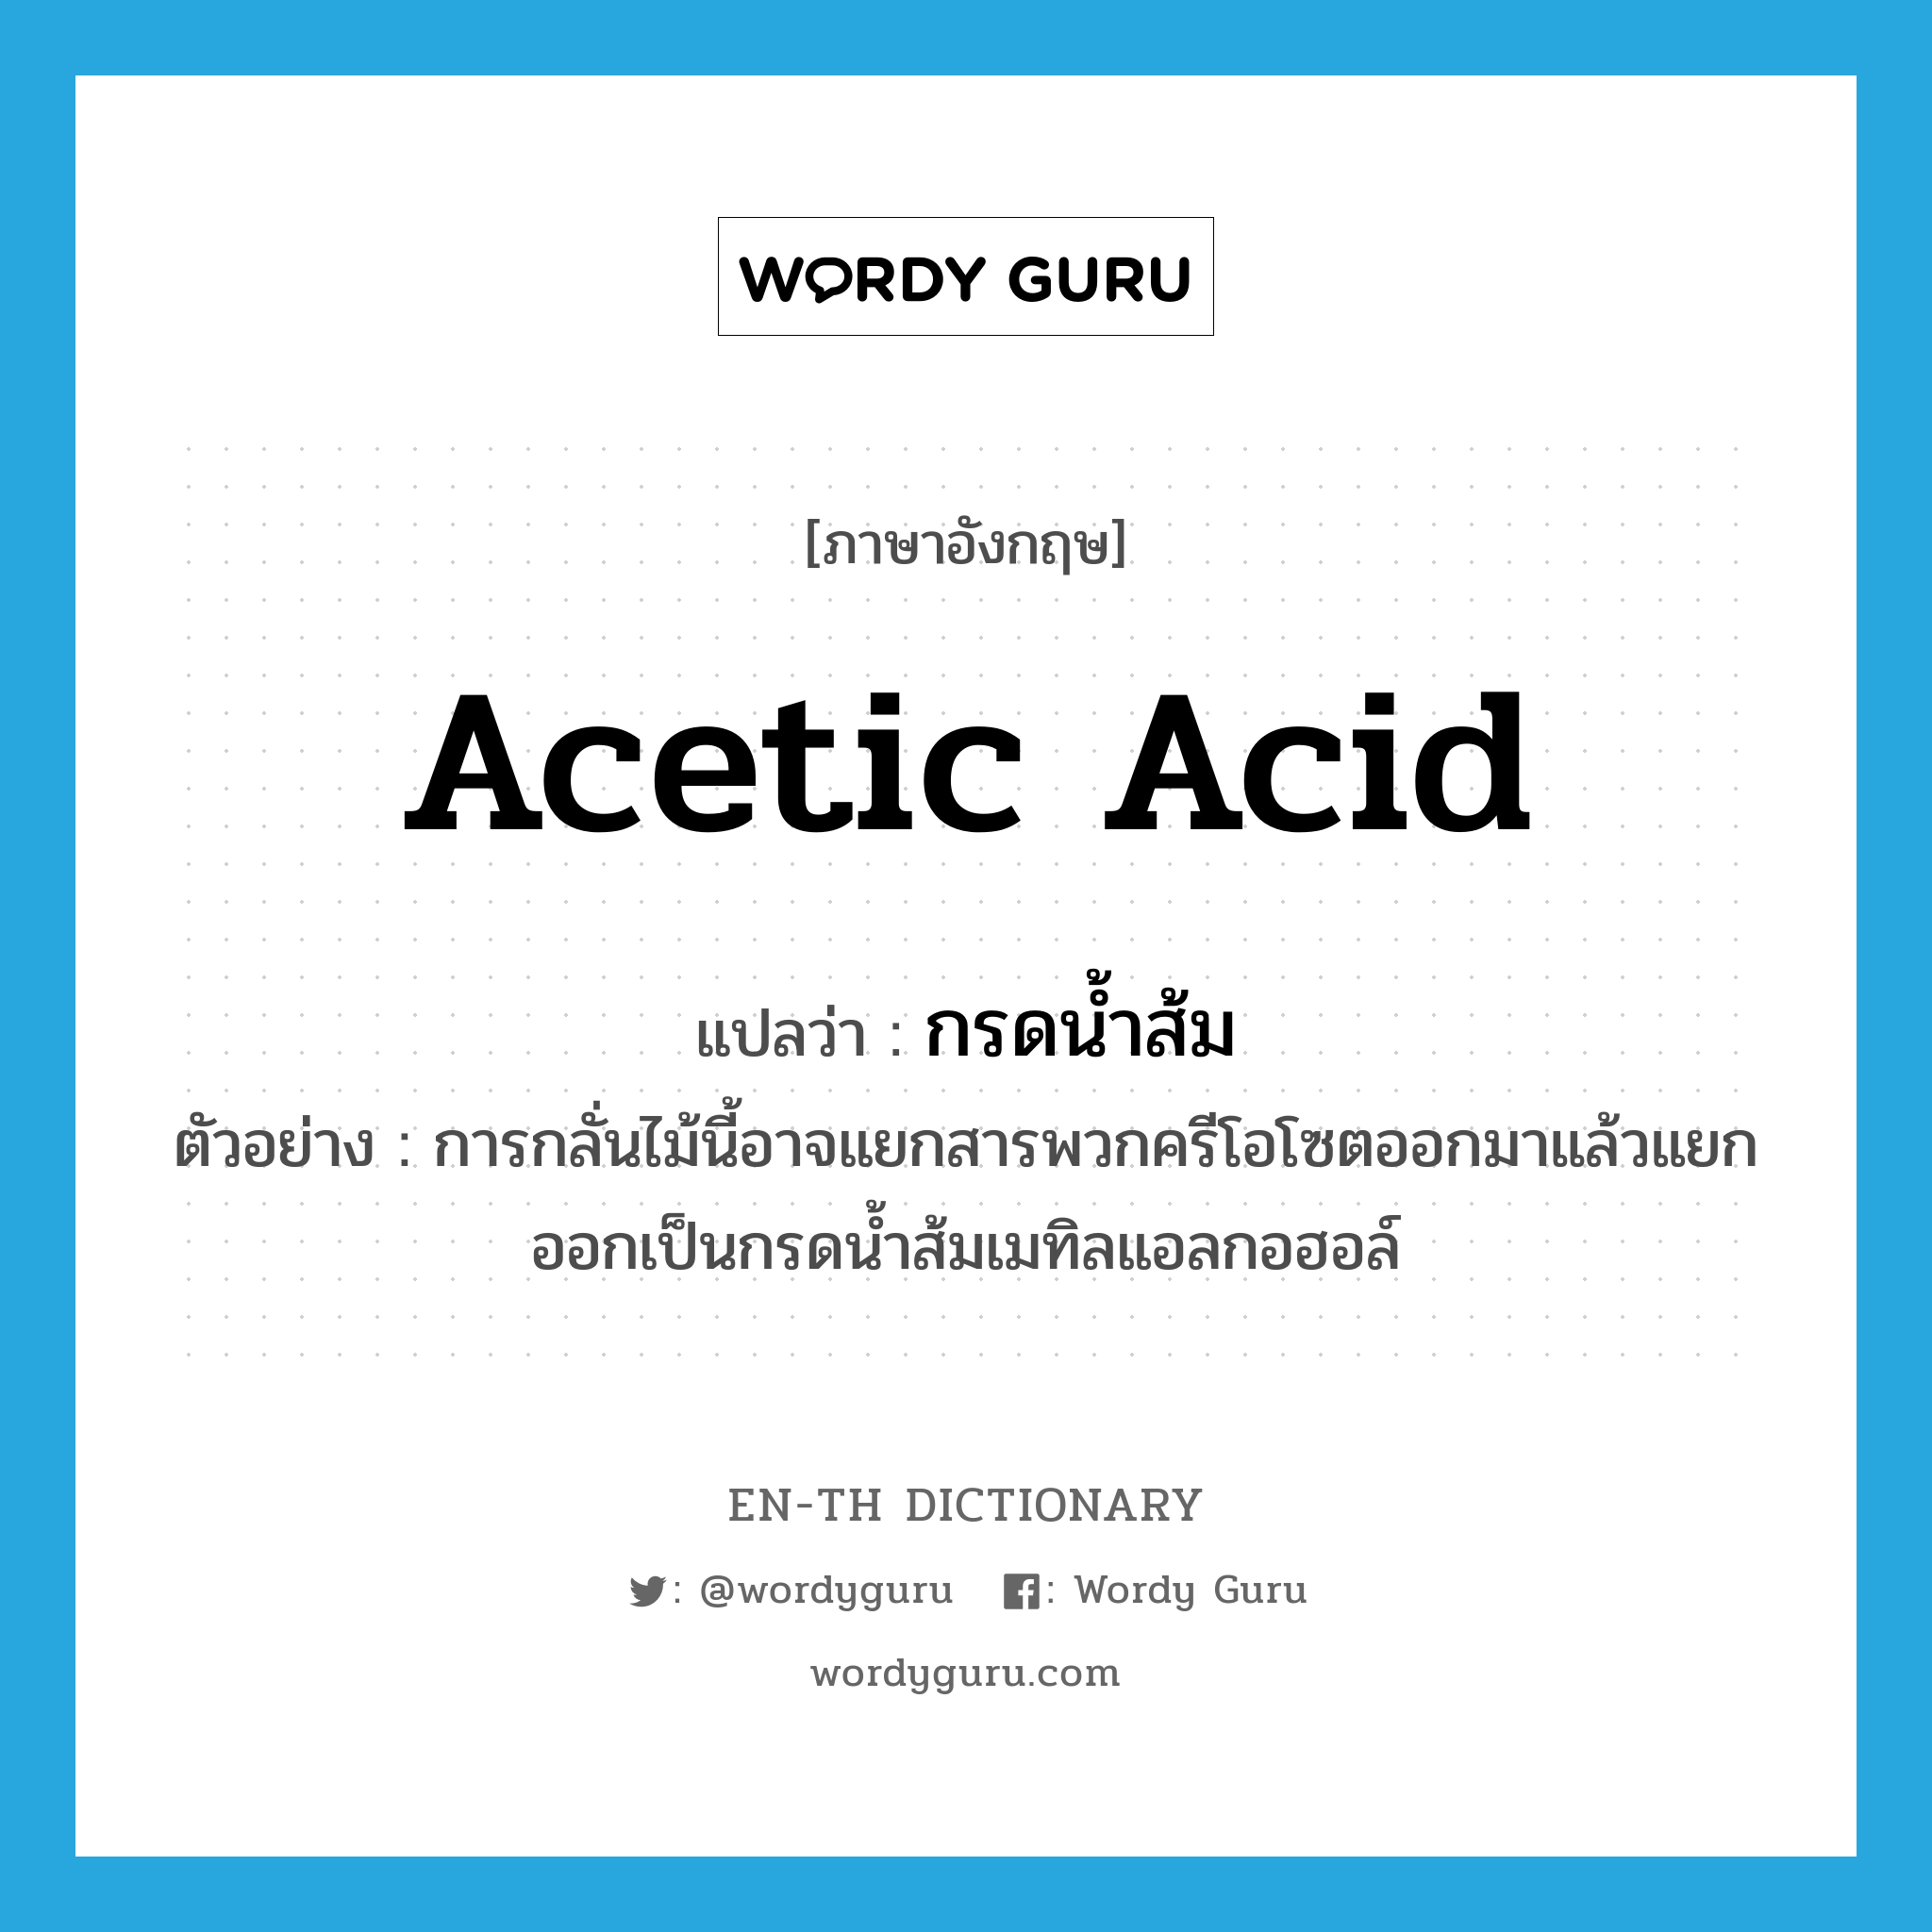 acetic acid แปลว่า?, คำศัพท์ภาษาอังกฤษ acetic acid แปลว่า กรดน้ำส้ม ประเภท N ตัวอย่าง การกลั่นไม้นี้อาจแยกสารพวกครีโอโซตออกมาแล้วแยกออกเป็นกรดน้ำส้มเมทิลแอลกอฮอล์ หมวด N